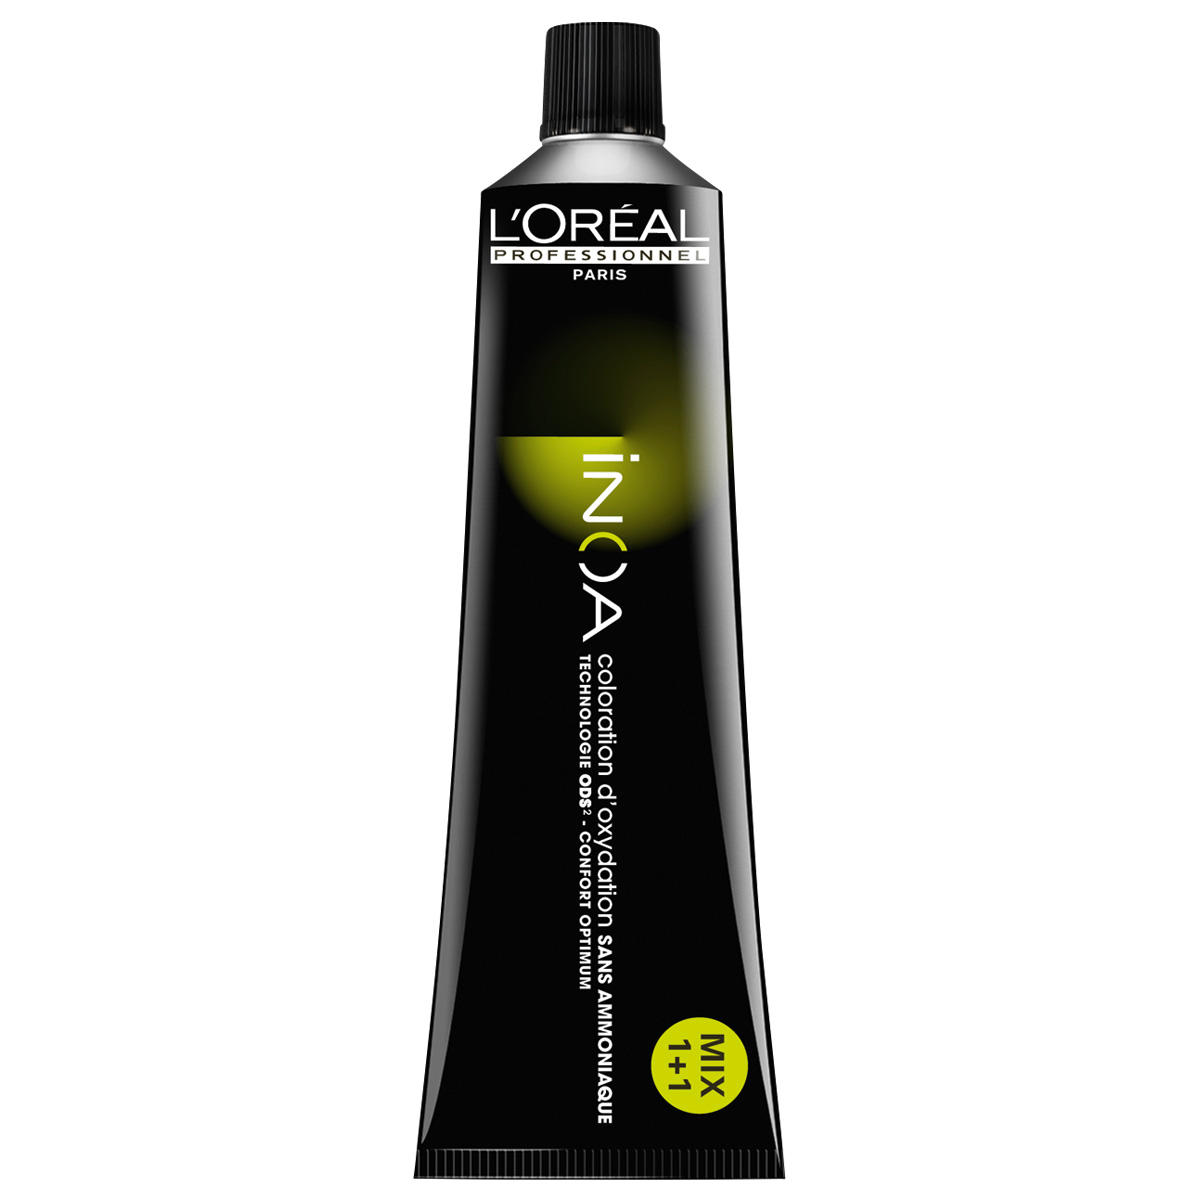 L'Oréal Professionnel Paris Coloration 7.34 Medium Blond Goud Koper, Tube 60 ml